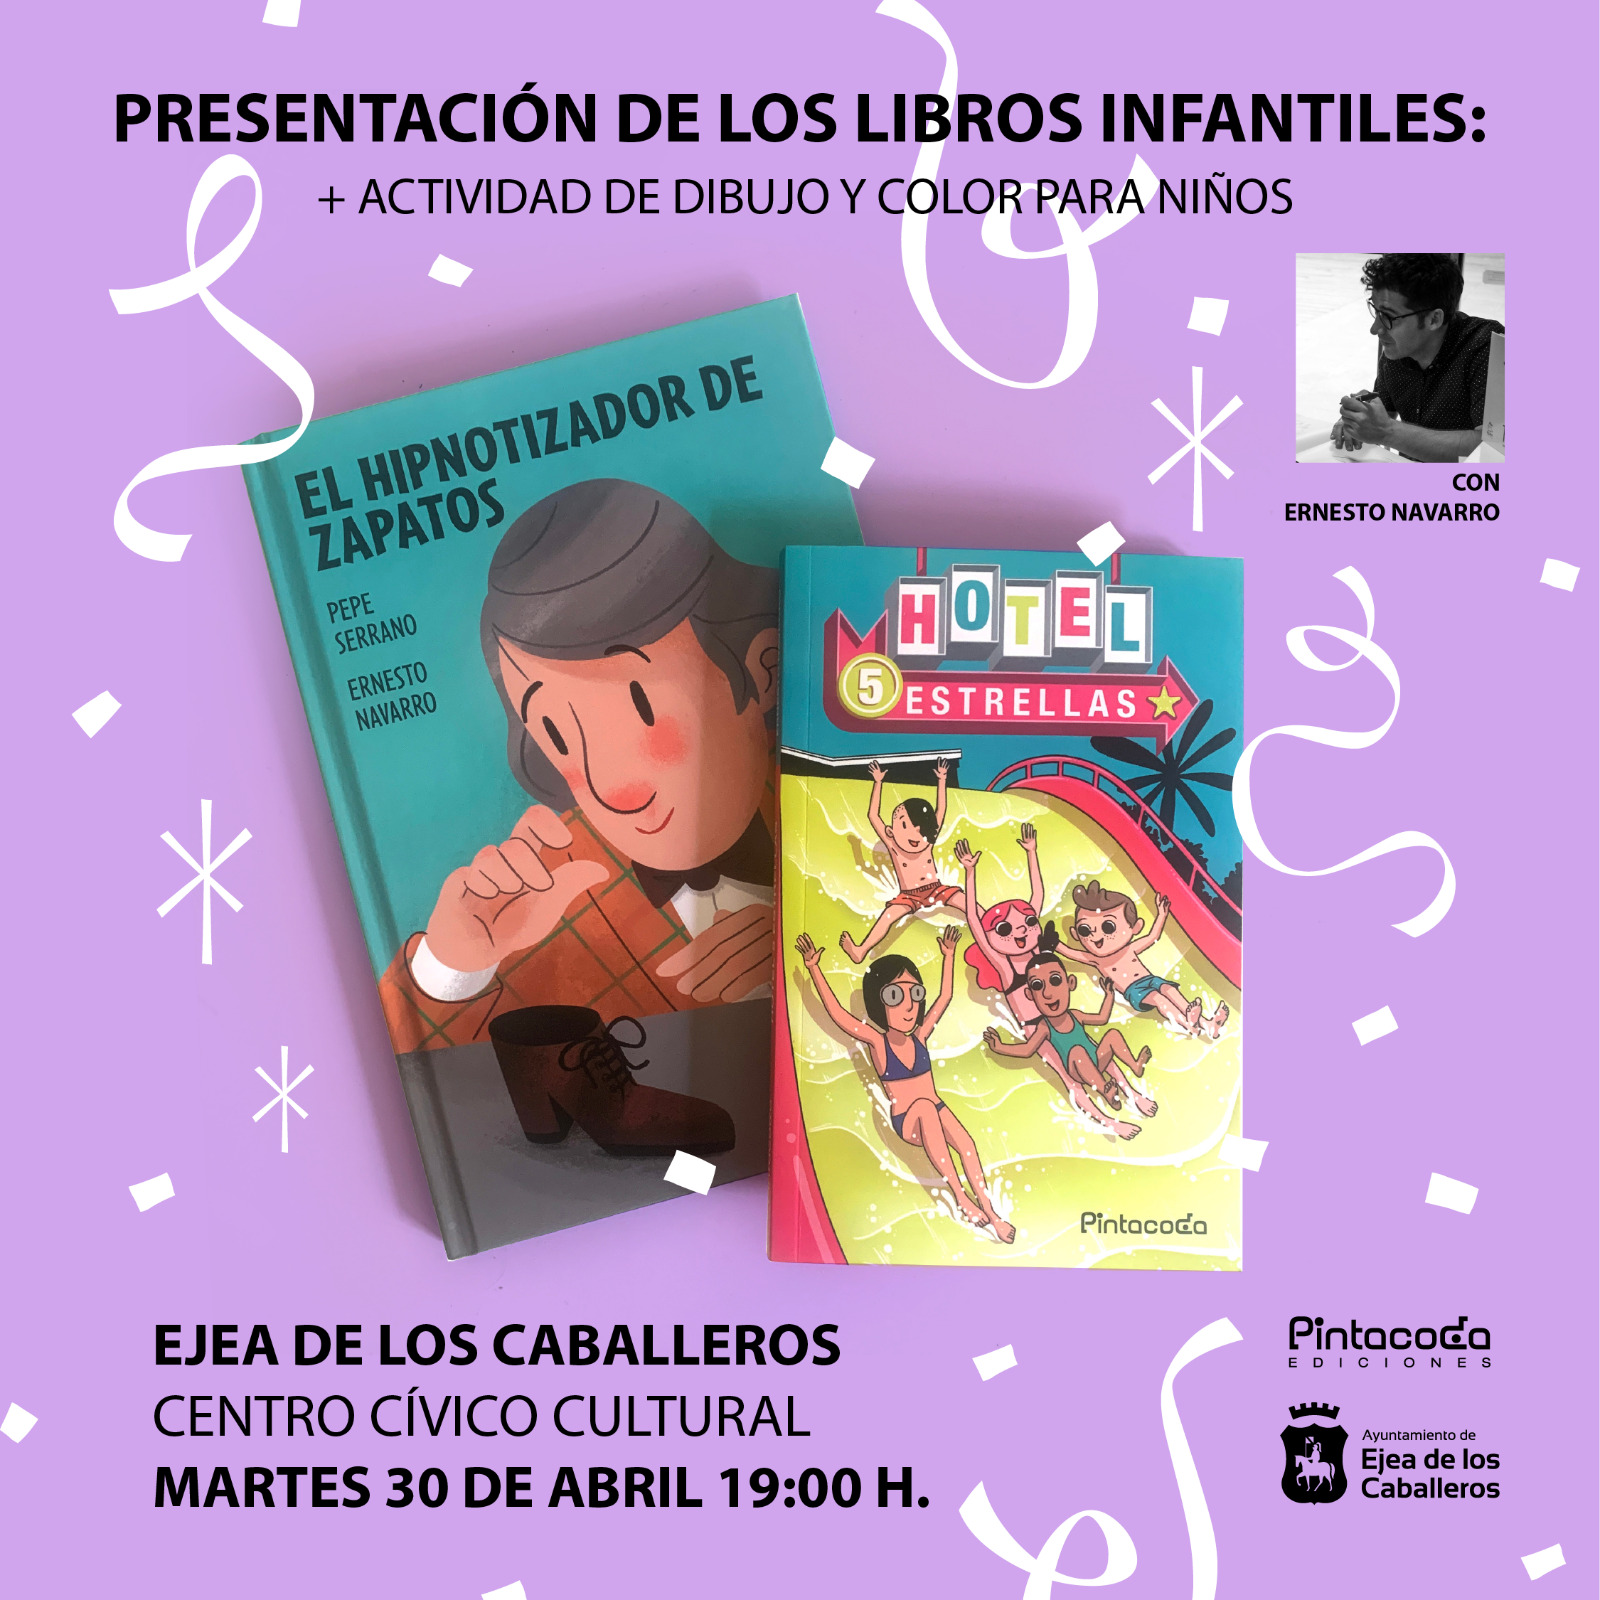 En este momento estás viendo Presentación de dos libros infantiles de la editorial Pintacoda que dirige el artista ejeano Ernesto Navarro